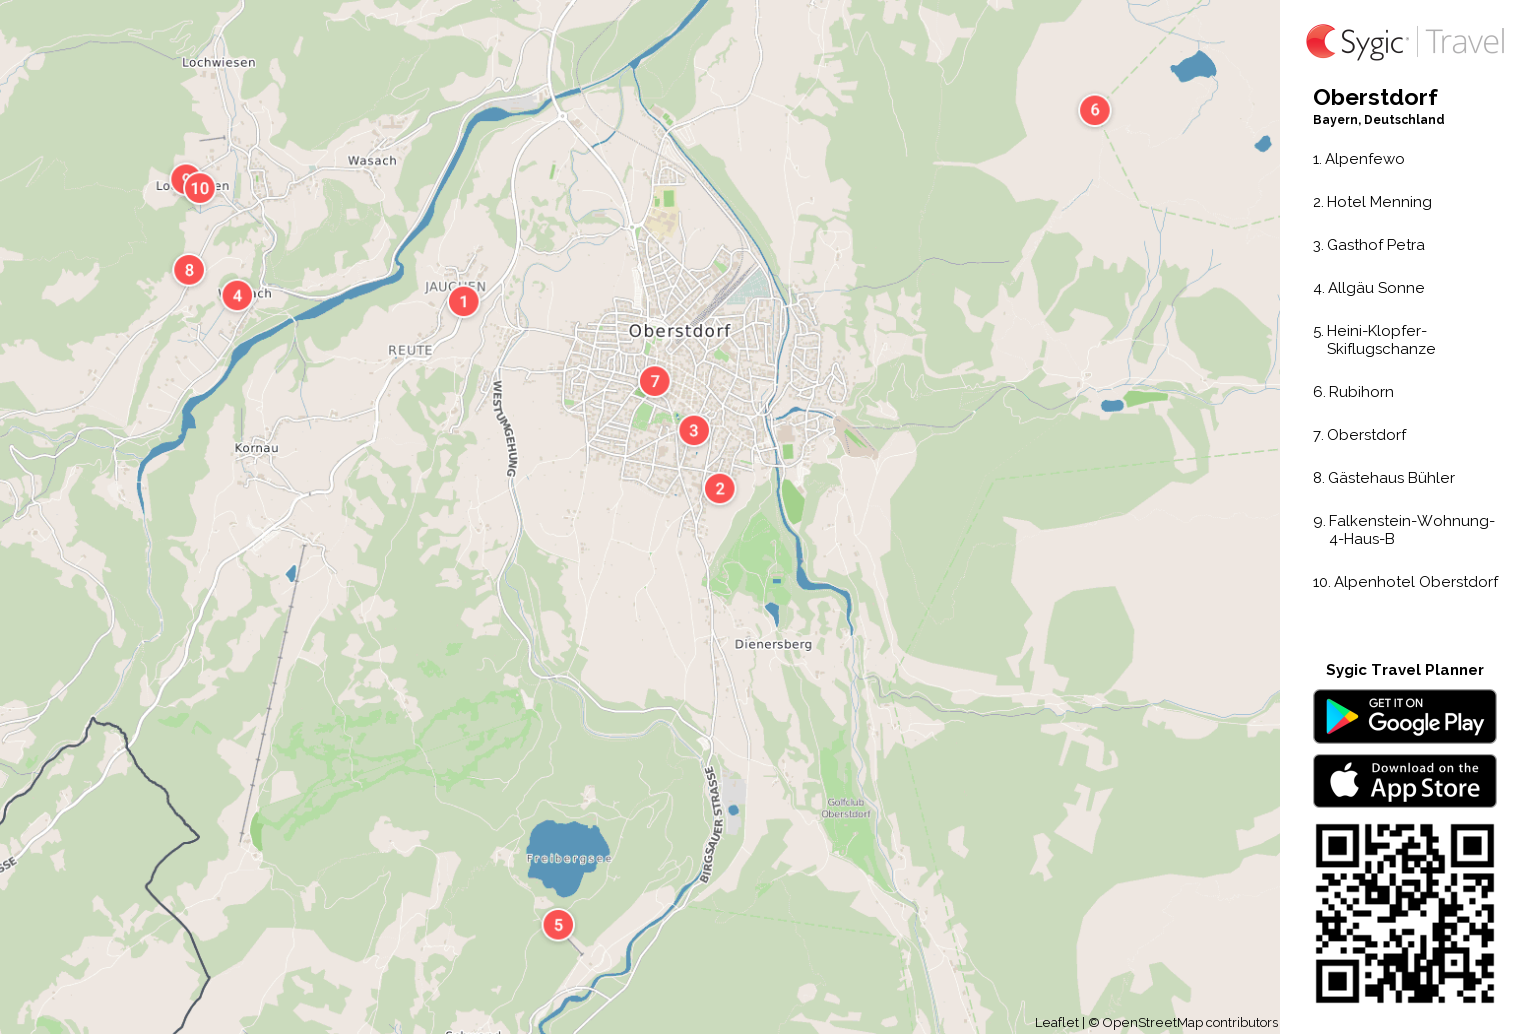 Karte von Oberstdorf ausdrucken | Sygic Travel